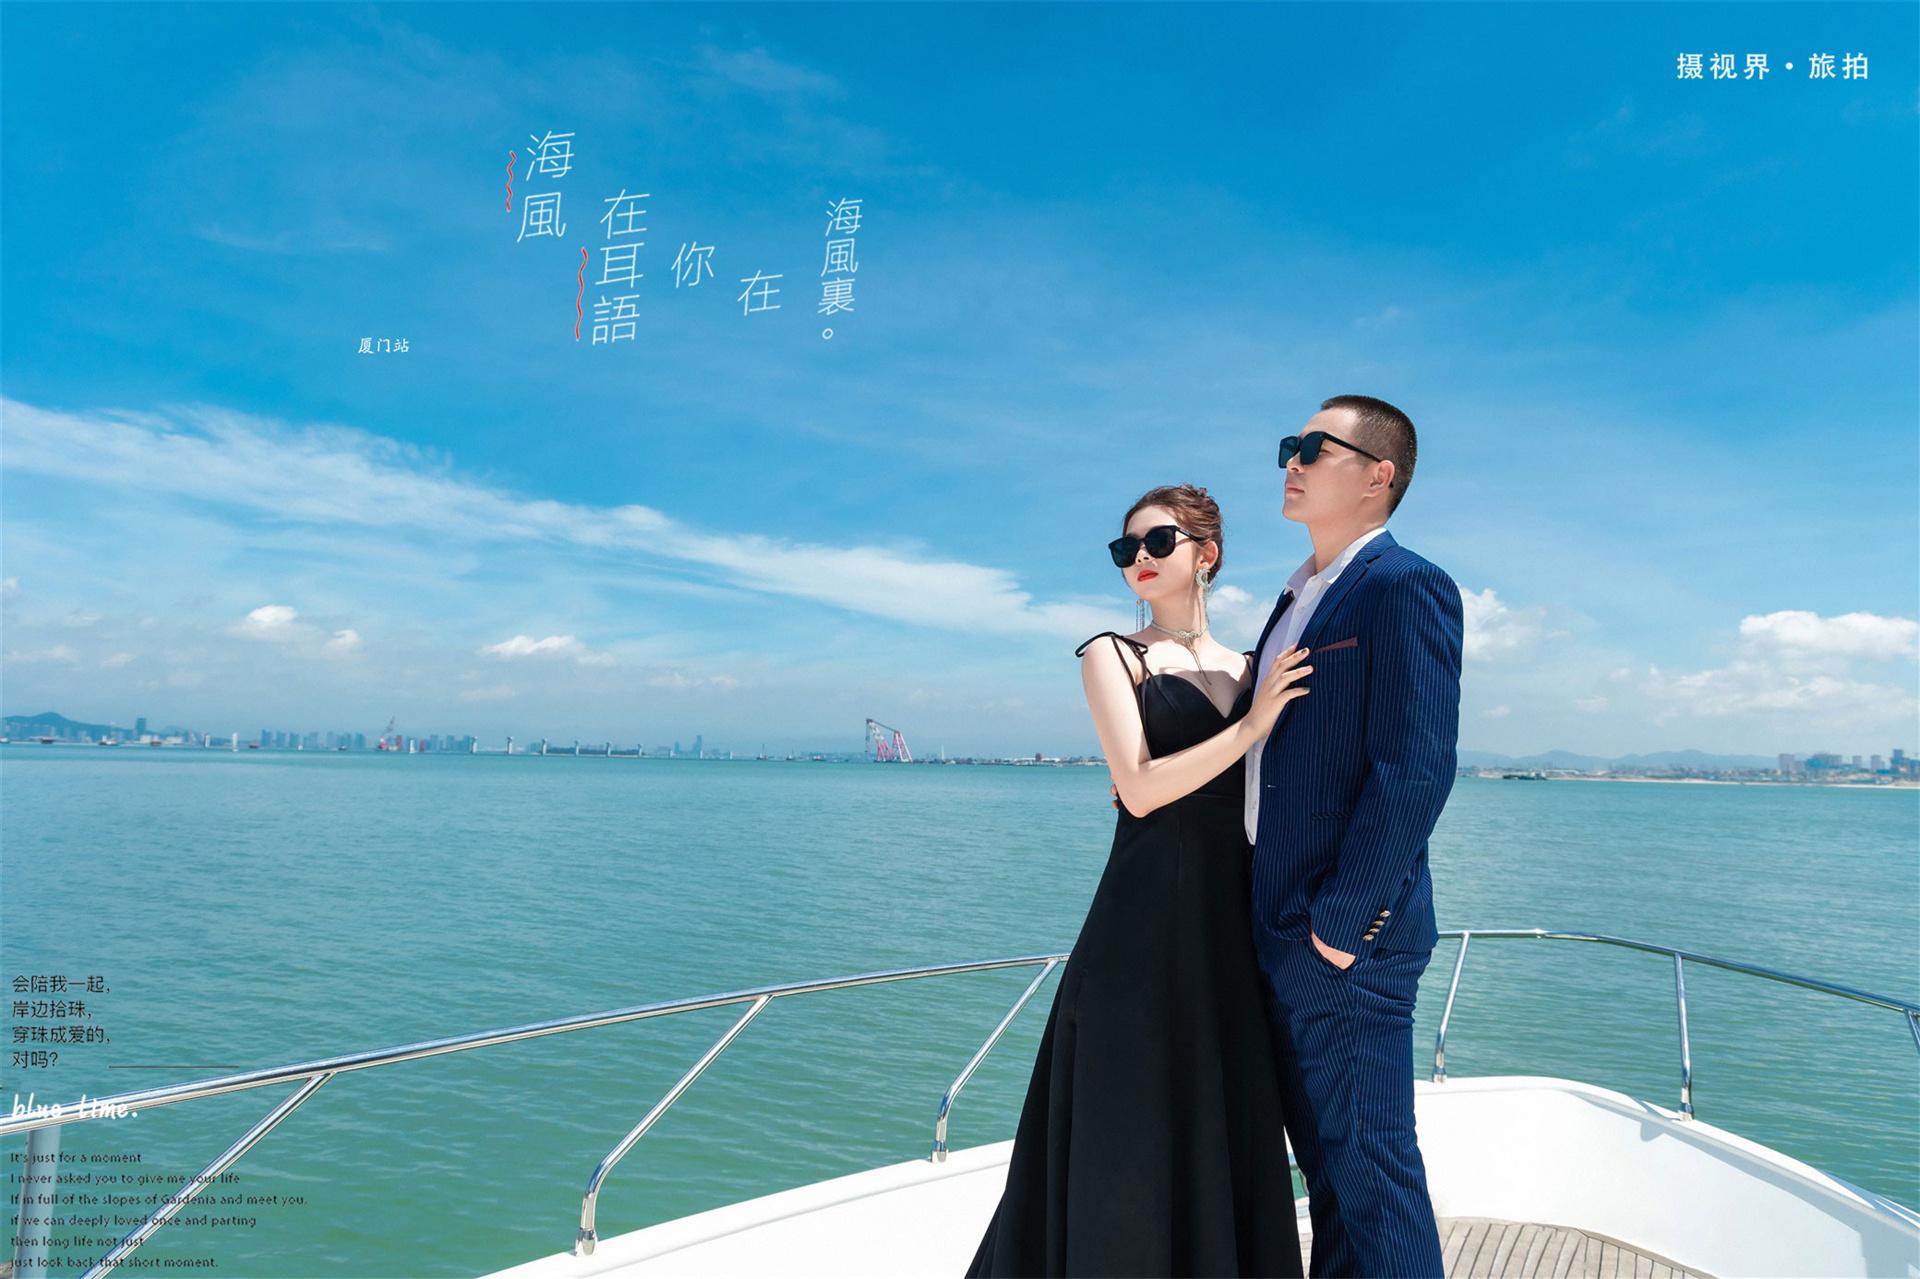 高端游艇_近期主题 | 作品展示 | 深圳皇室米兰婚纱摄影集团